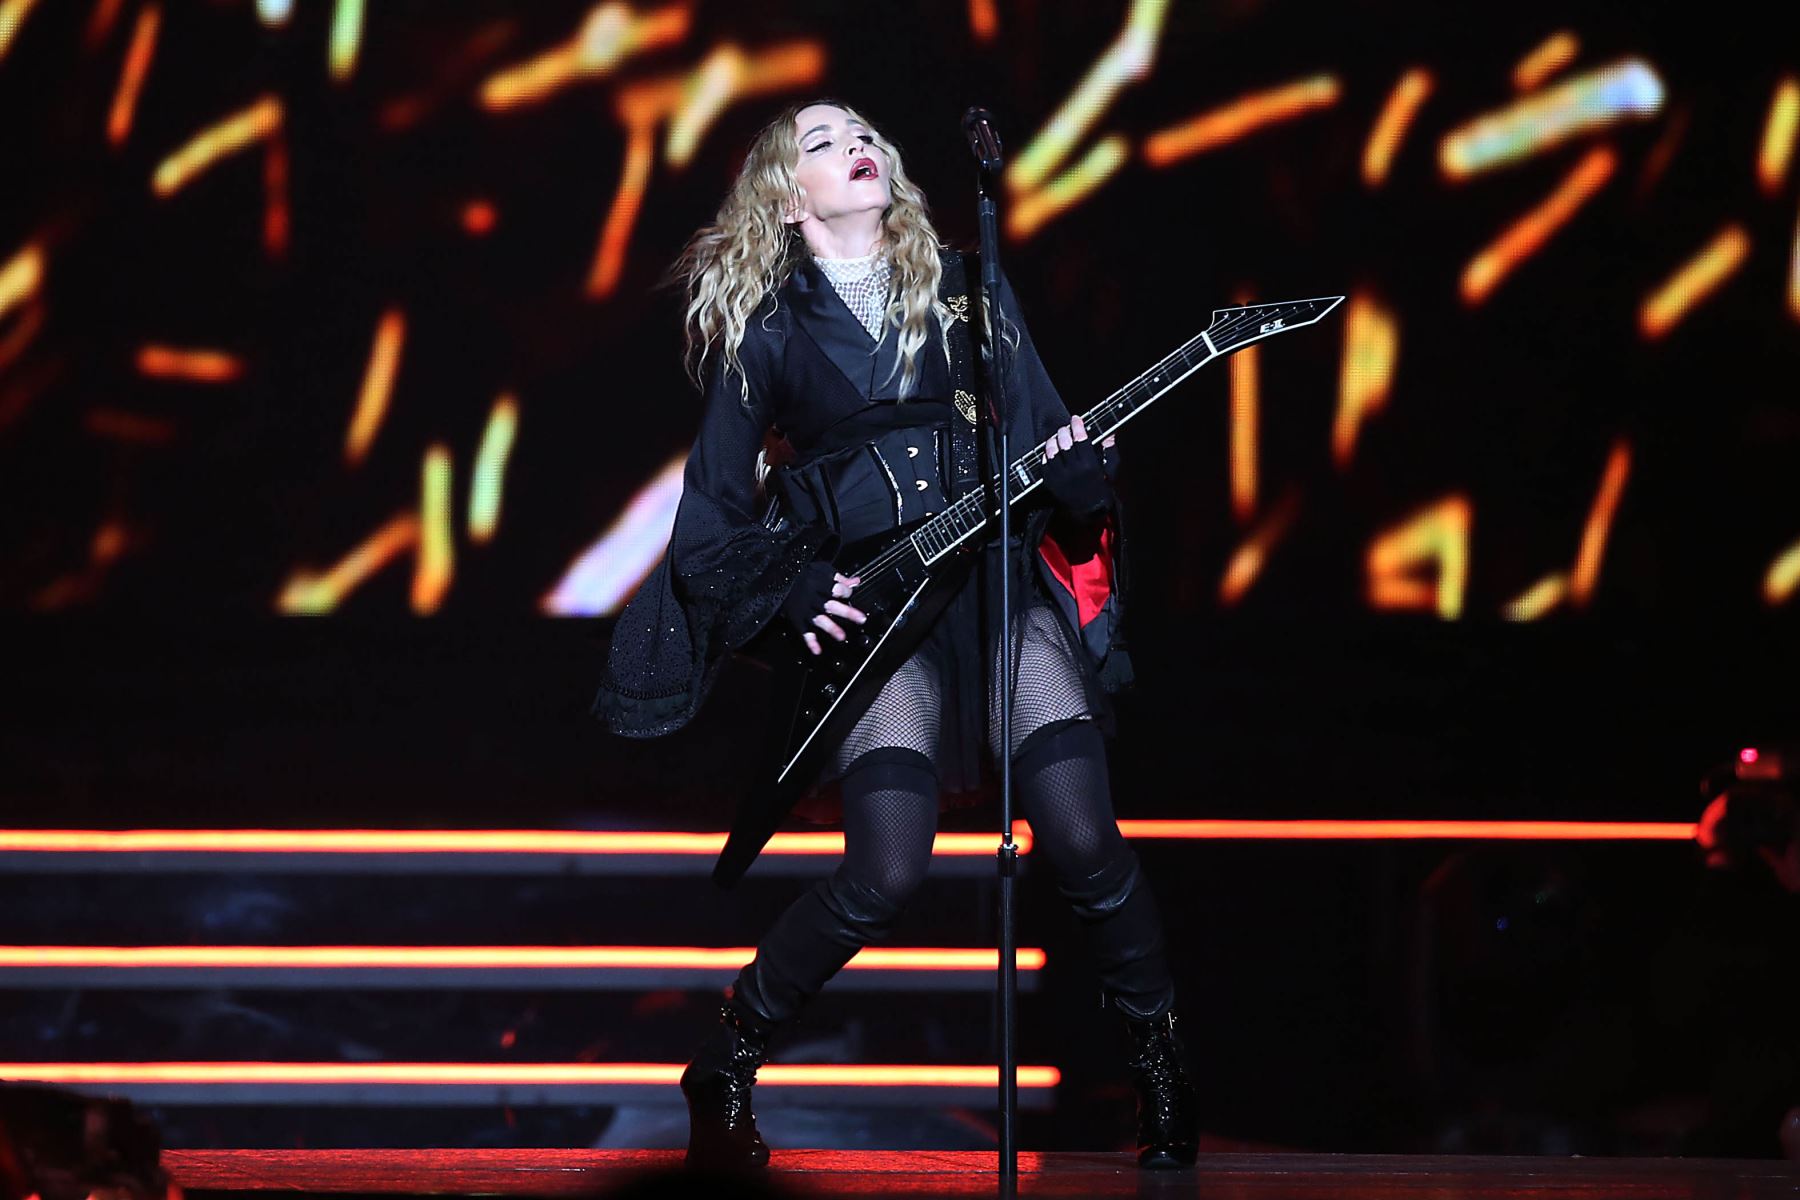 La cantante estadounidense Madonna actúa en el escenario de Colonia, en el oeste de Alemania, el 4 de noviembre de 2015, durante un concierto que comienza su gira por Europa.
AFP